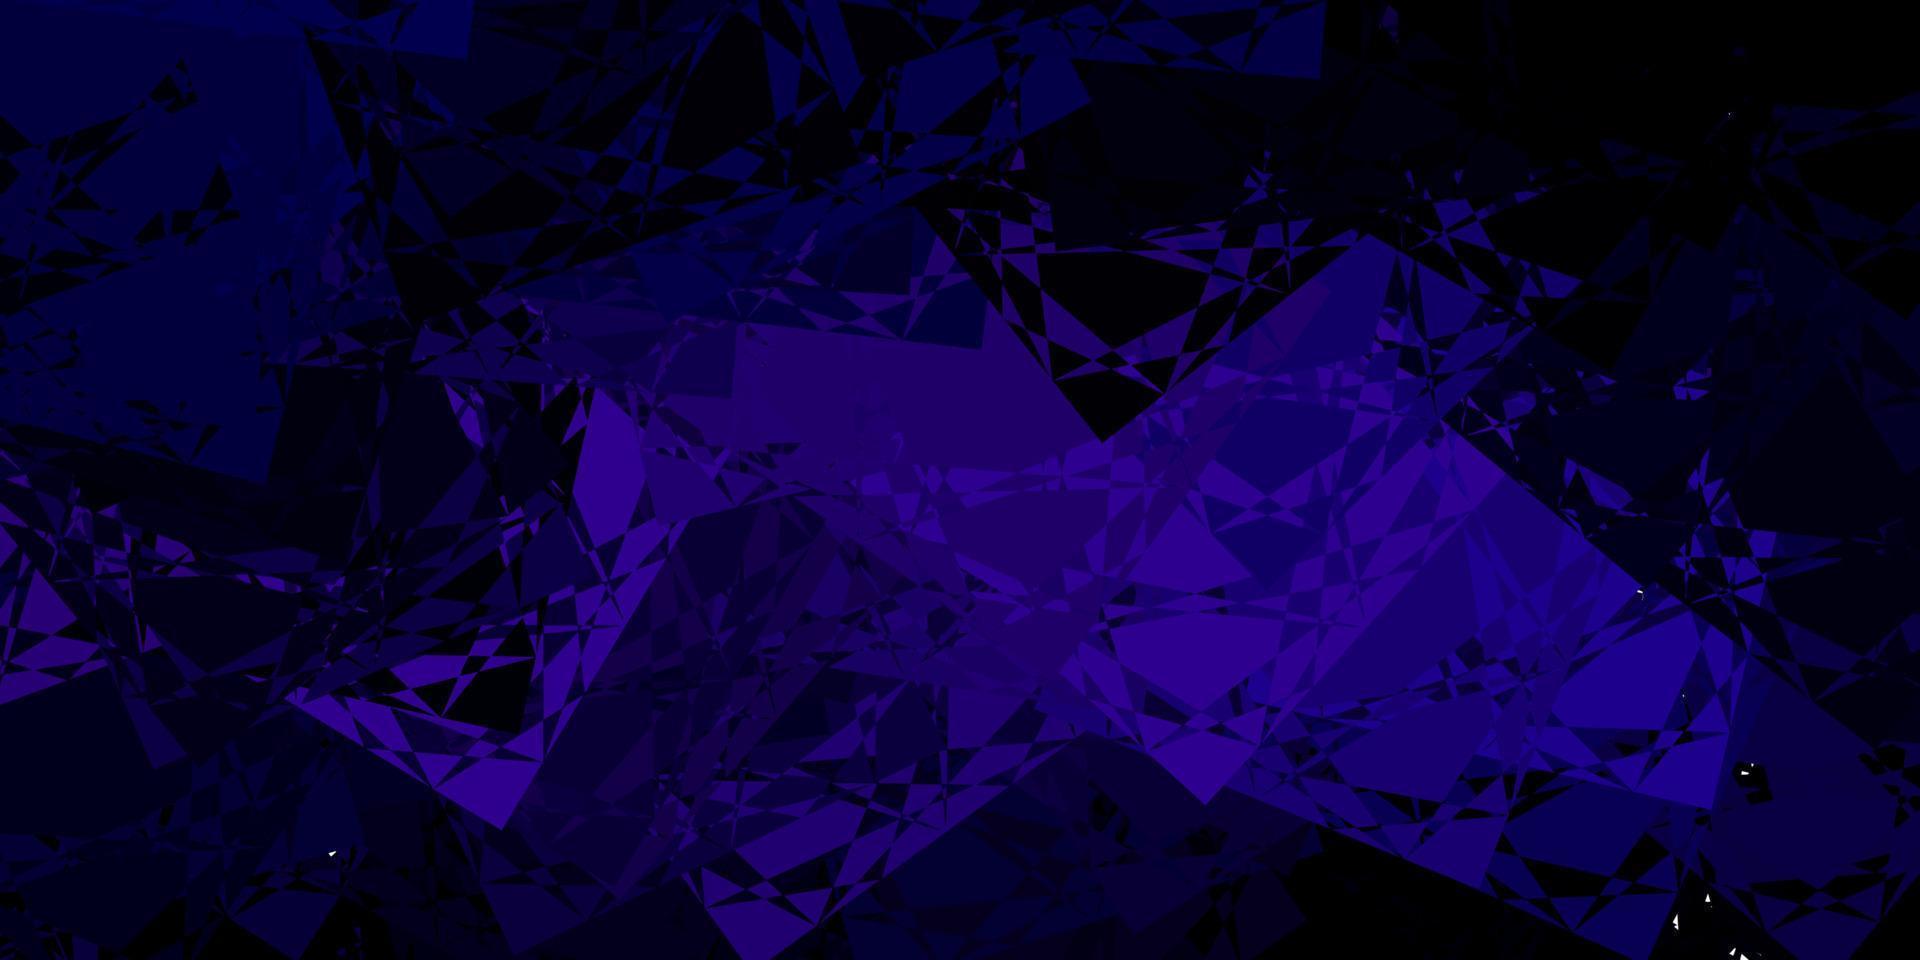 sfondo vettoriale viola scuro con forme poligonali.